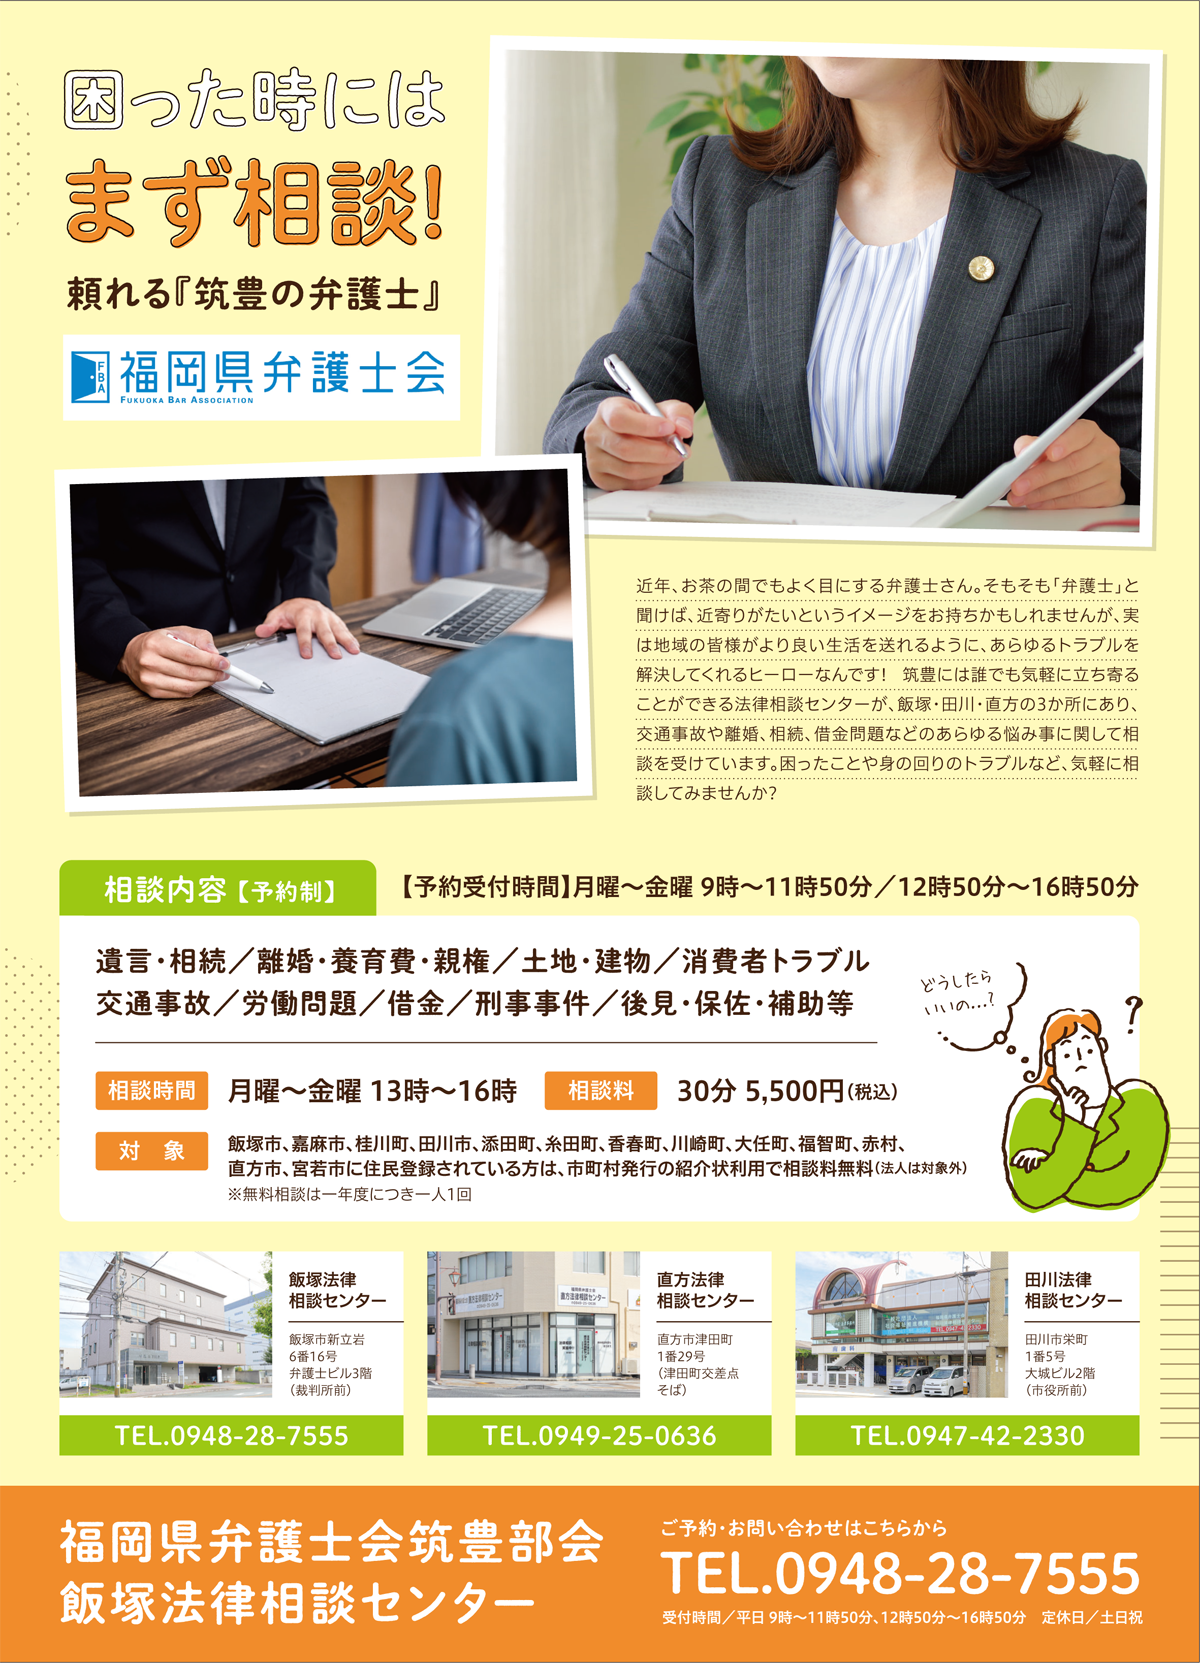 飯塚法律相談センター30周年記念企画 